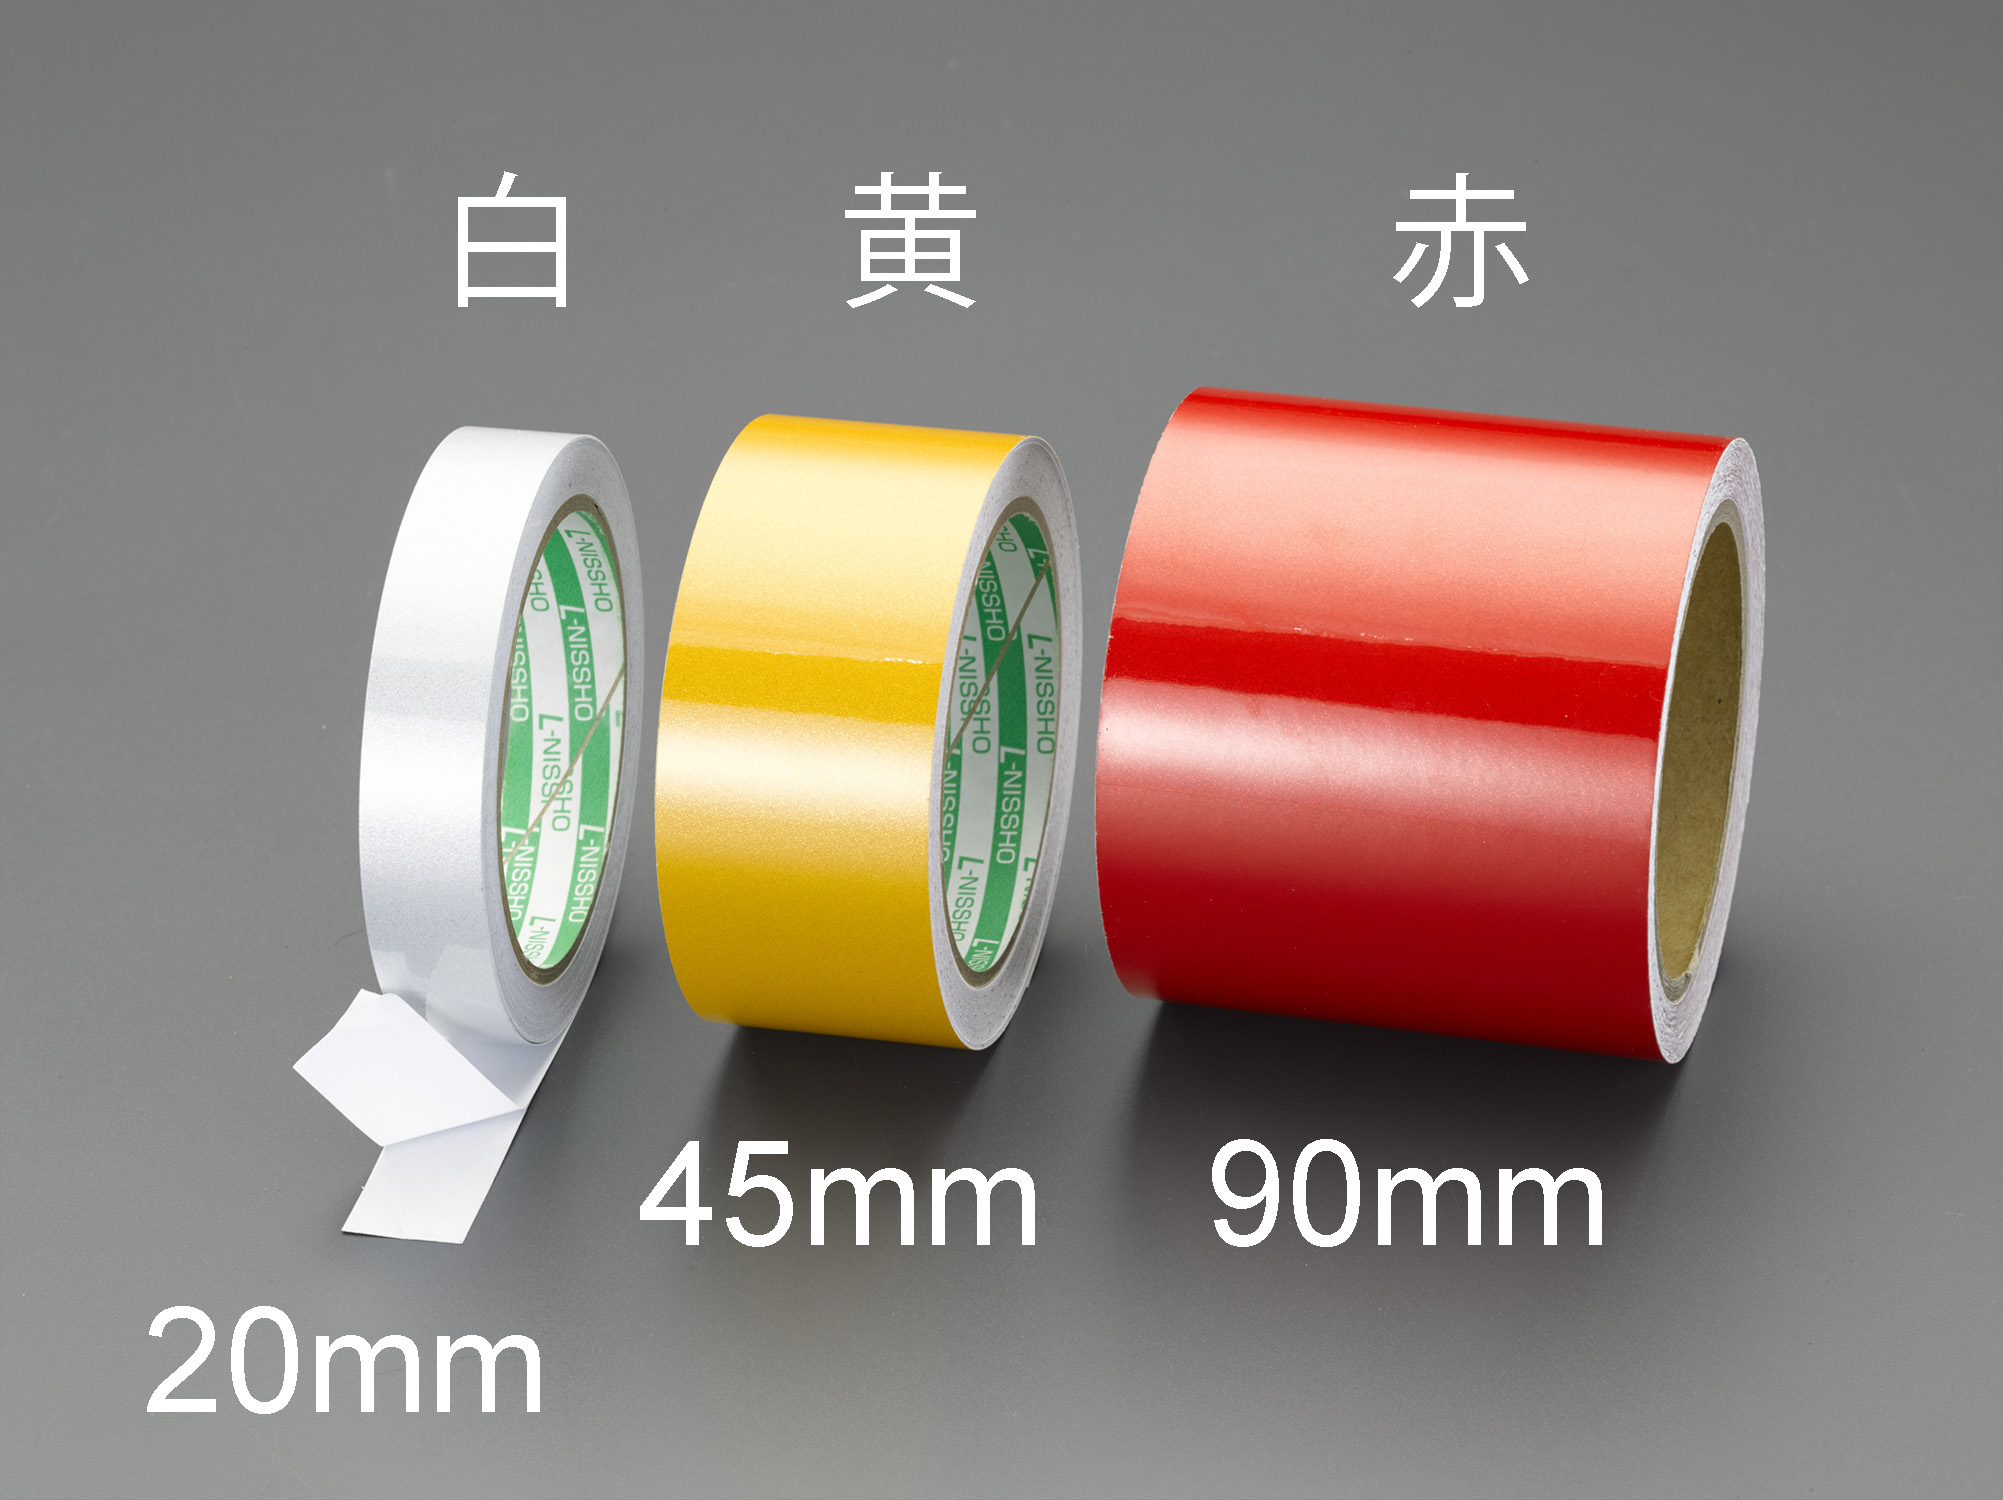 高耐久反射ラインテープ 青 50mmx20m 厚さ2mm 再帰反射 反射ガラス粒子 耐久性が高く反射するインテープ